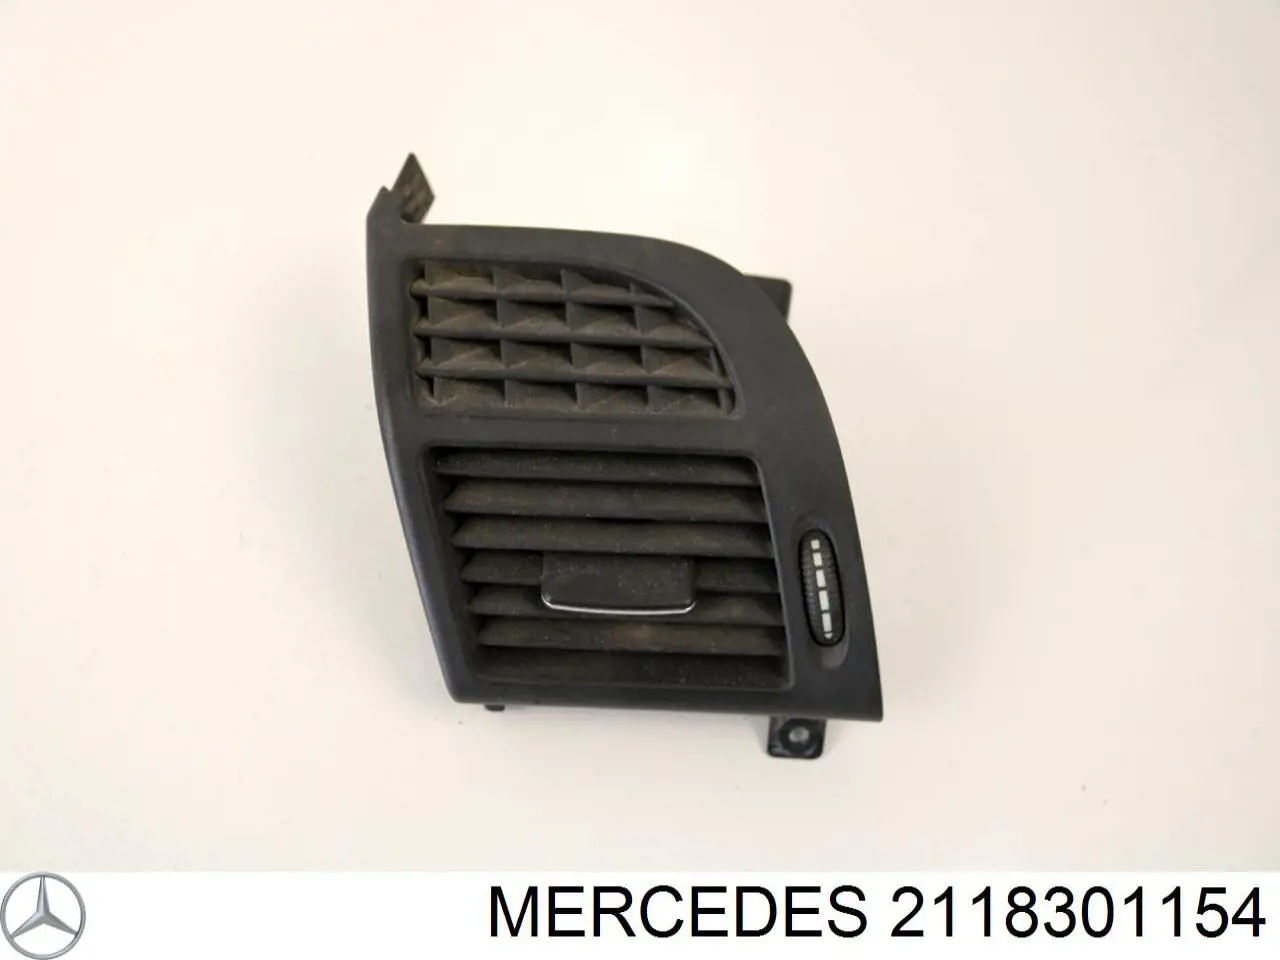 2118301154 Mercedes решетка вентиляции салона на "торпедо" левая